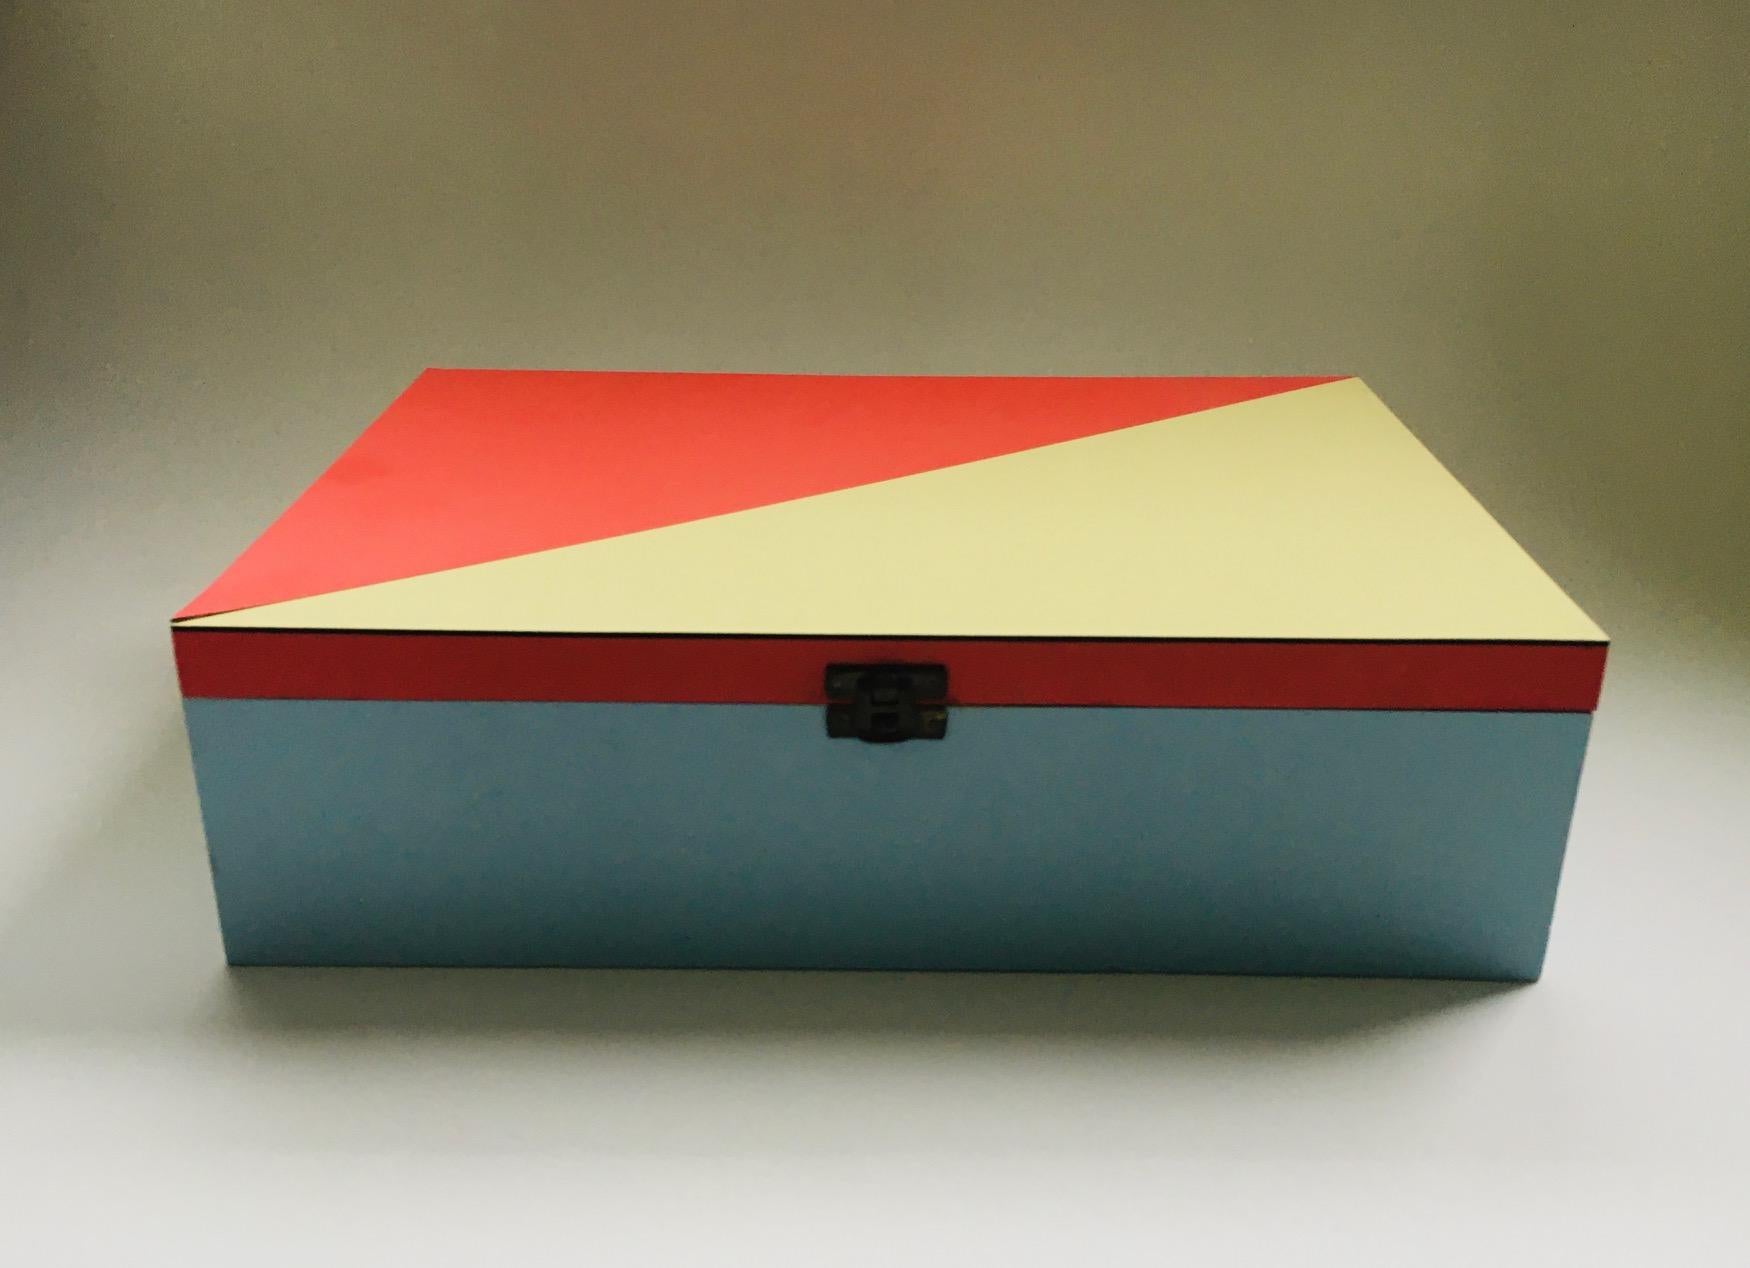 Boîte aux lettres Vintage Midcentury Modern Dutch Design dans le style du Modernisme DE STIJL. Fabriqué en Hollande dans les années 1950. Boîte en bois, finition en stratifié bleu pâle, rouge doux et jaune pâle avec motif géométrique. Intérieur en